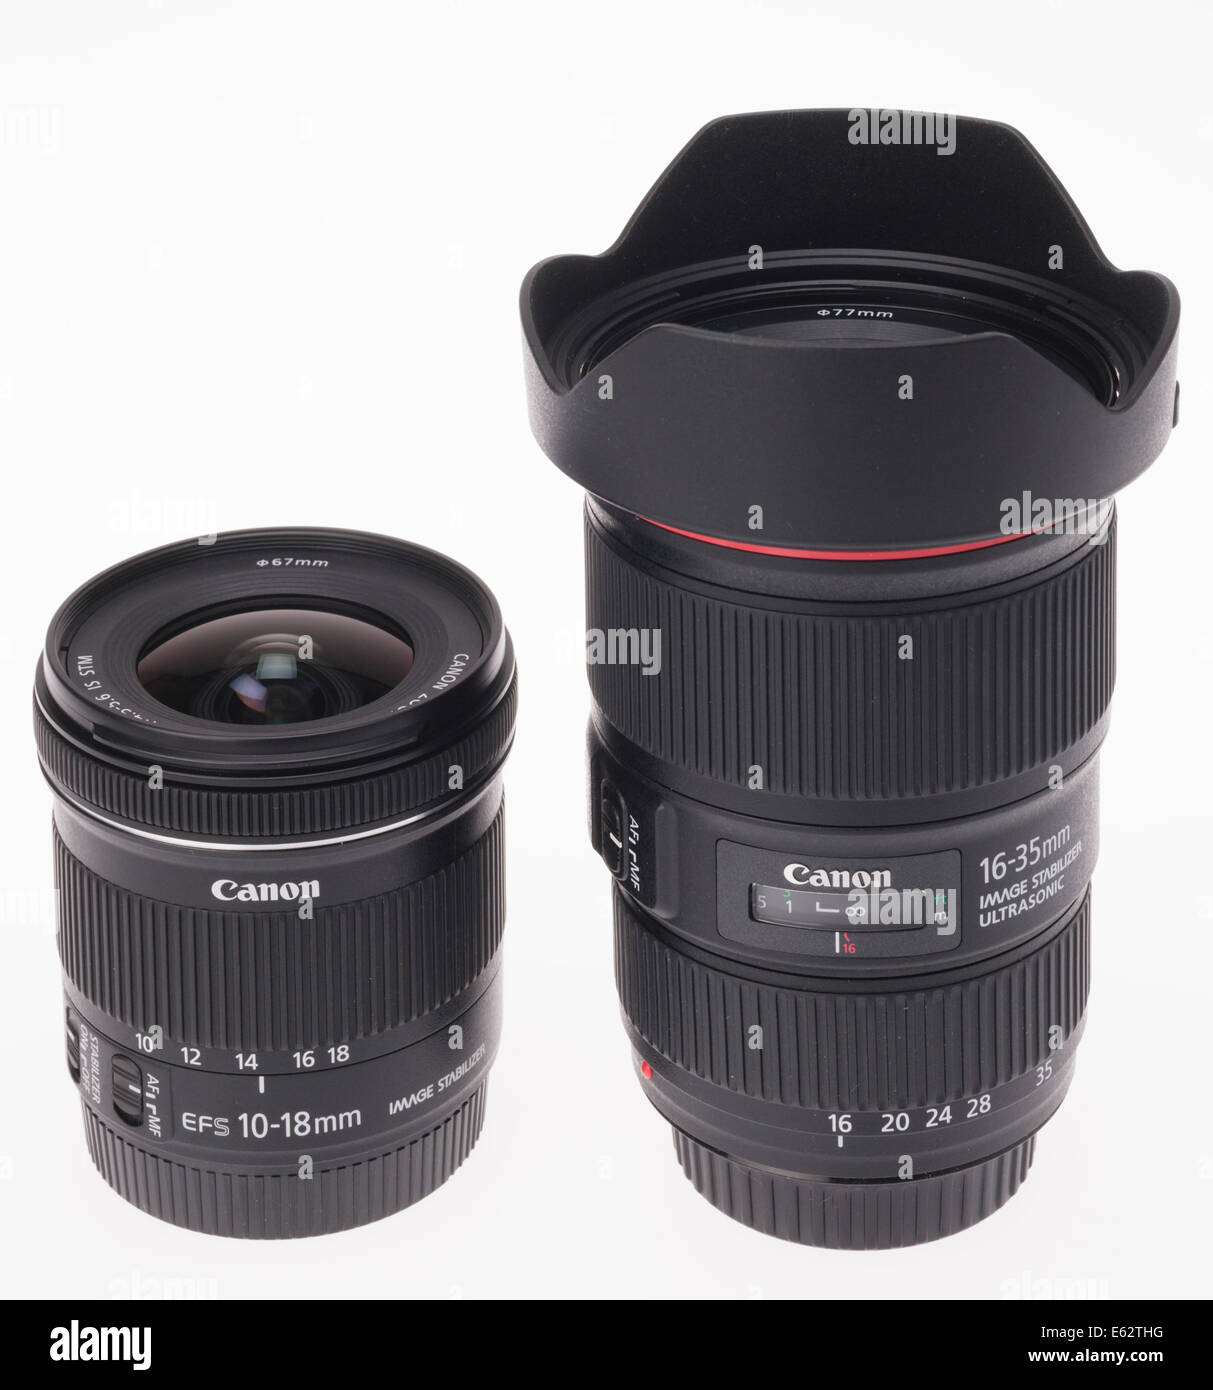 Diseño de lente de zoom de la cámara DSLR. Zoom gran angular de Canon APS-C (izquierda, 10-18mm) y full frame (rght, 16-35 mm). Foto de stock